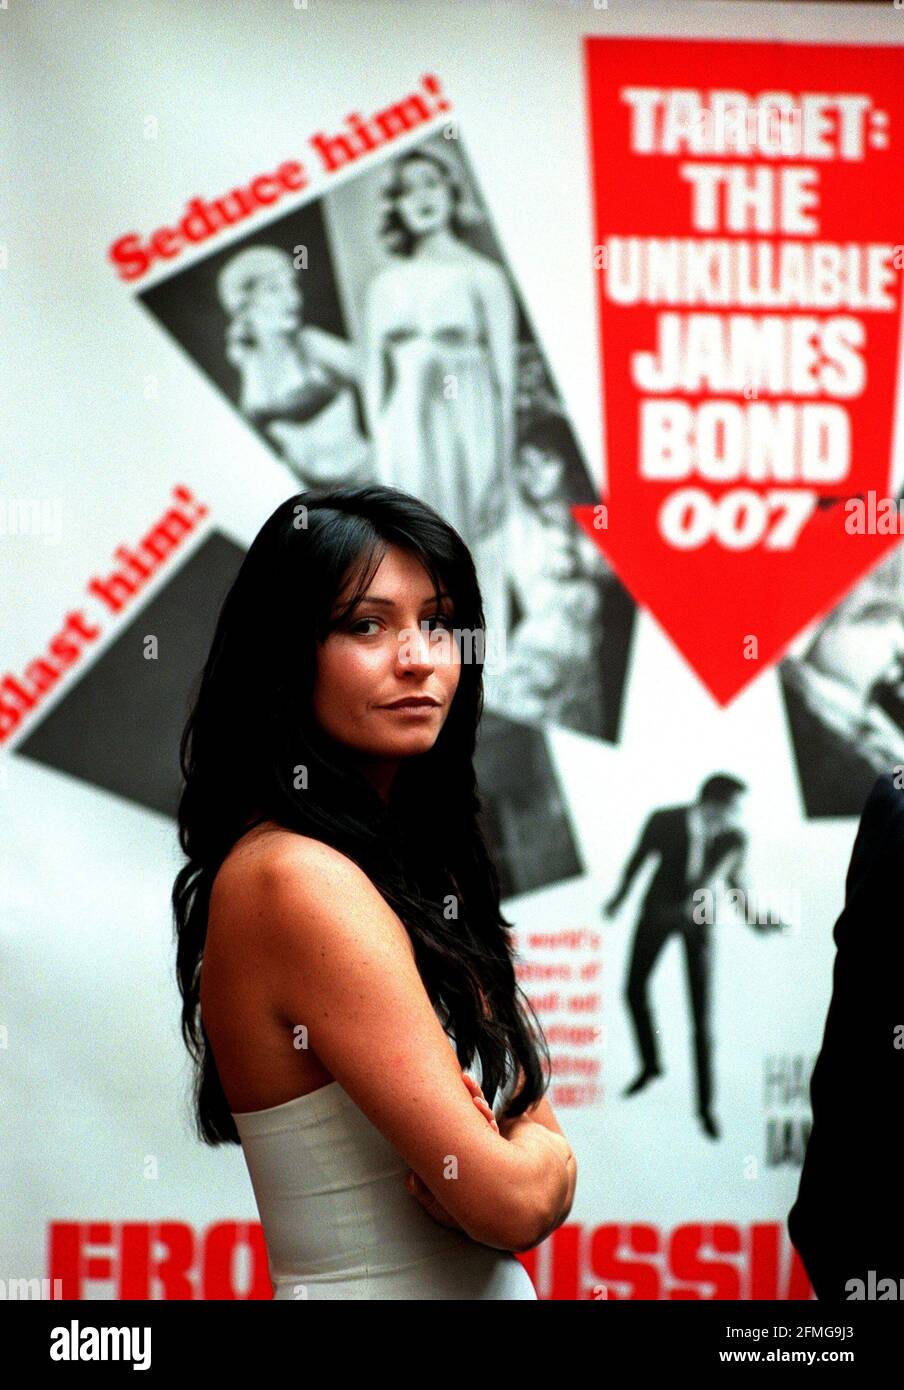 Christies Auktion von James Bond/007 Memorabilia 1998, die am 17. September im Hintergrund ein Plakat für "aus Russland mit Liebe" stattfinden wird. Das Mädchen ist Joanne Power und war dort, um das Outfit von 'Moonraker' zu modellieren. Stockfoto